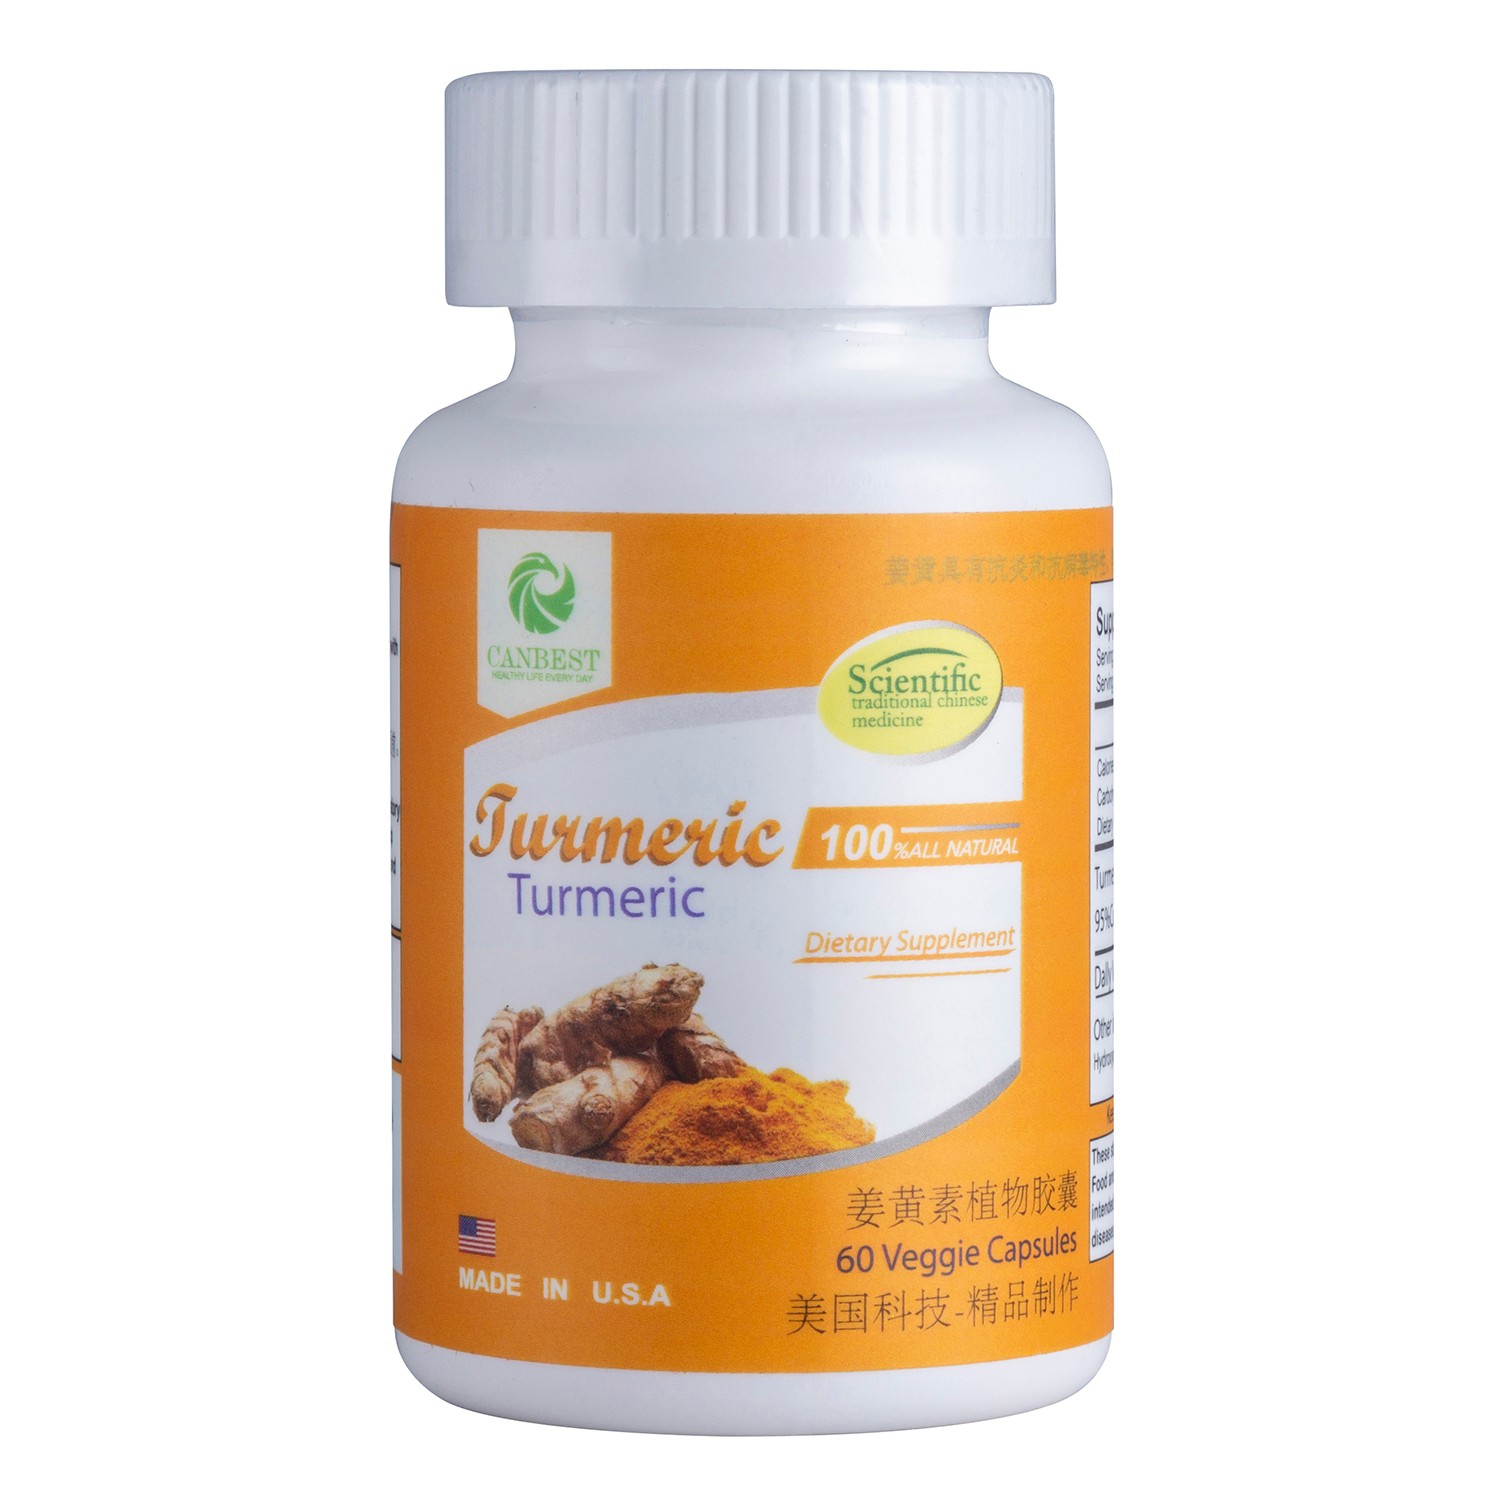 姜黄素胶囊 - Turmeric Capsule